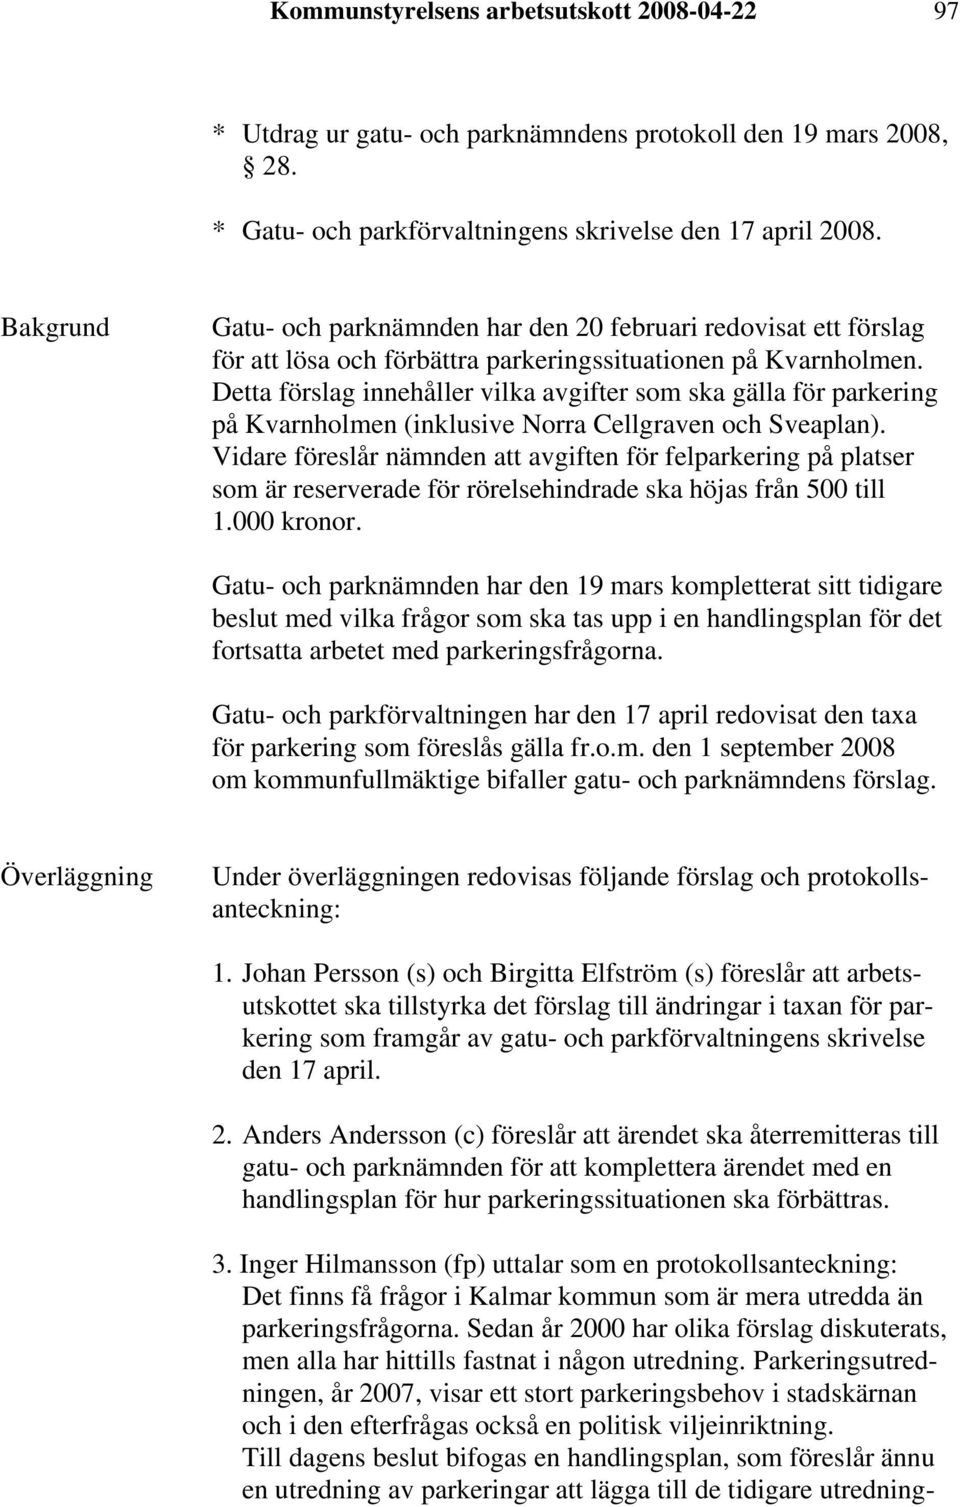 Detta förslag innehåller vilka avgifter som ska gälla för parkering på Kvarnholmen (inklusive Norra Cellgraven och Sveaplan).